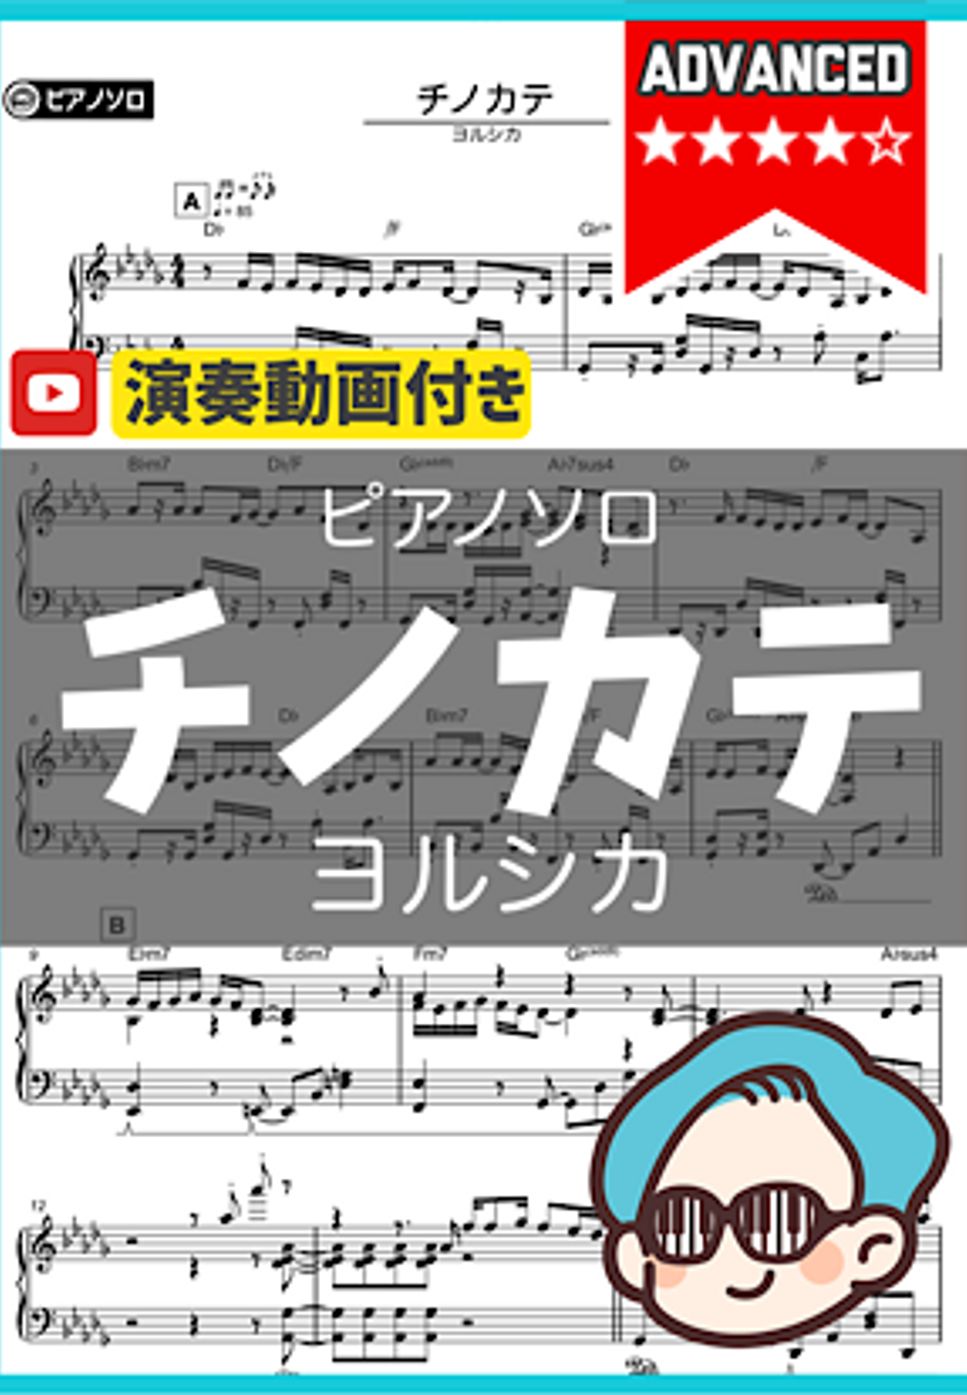 ヨルシカ - チノカテ by シータピアノ